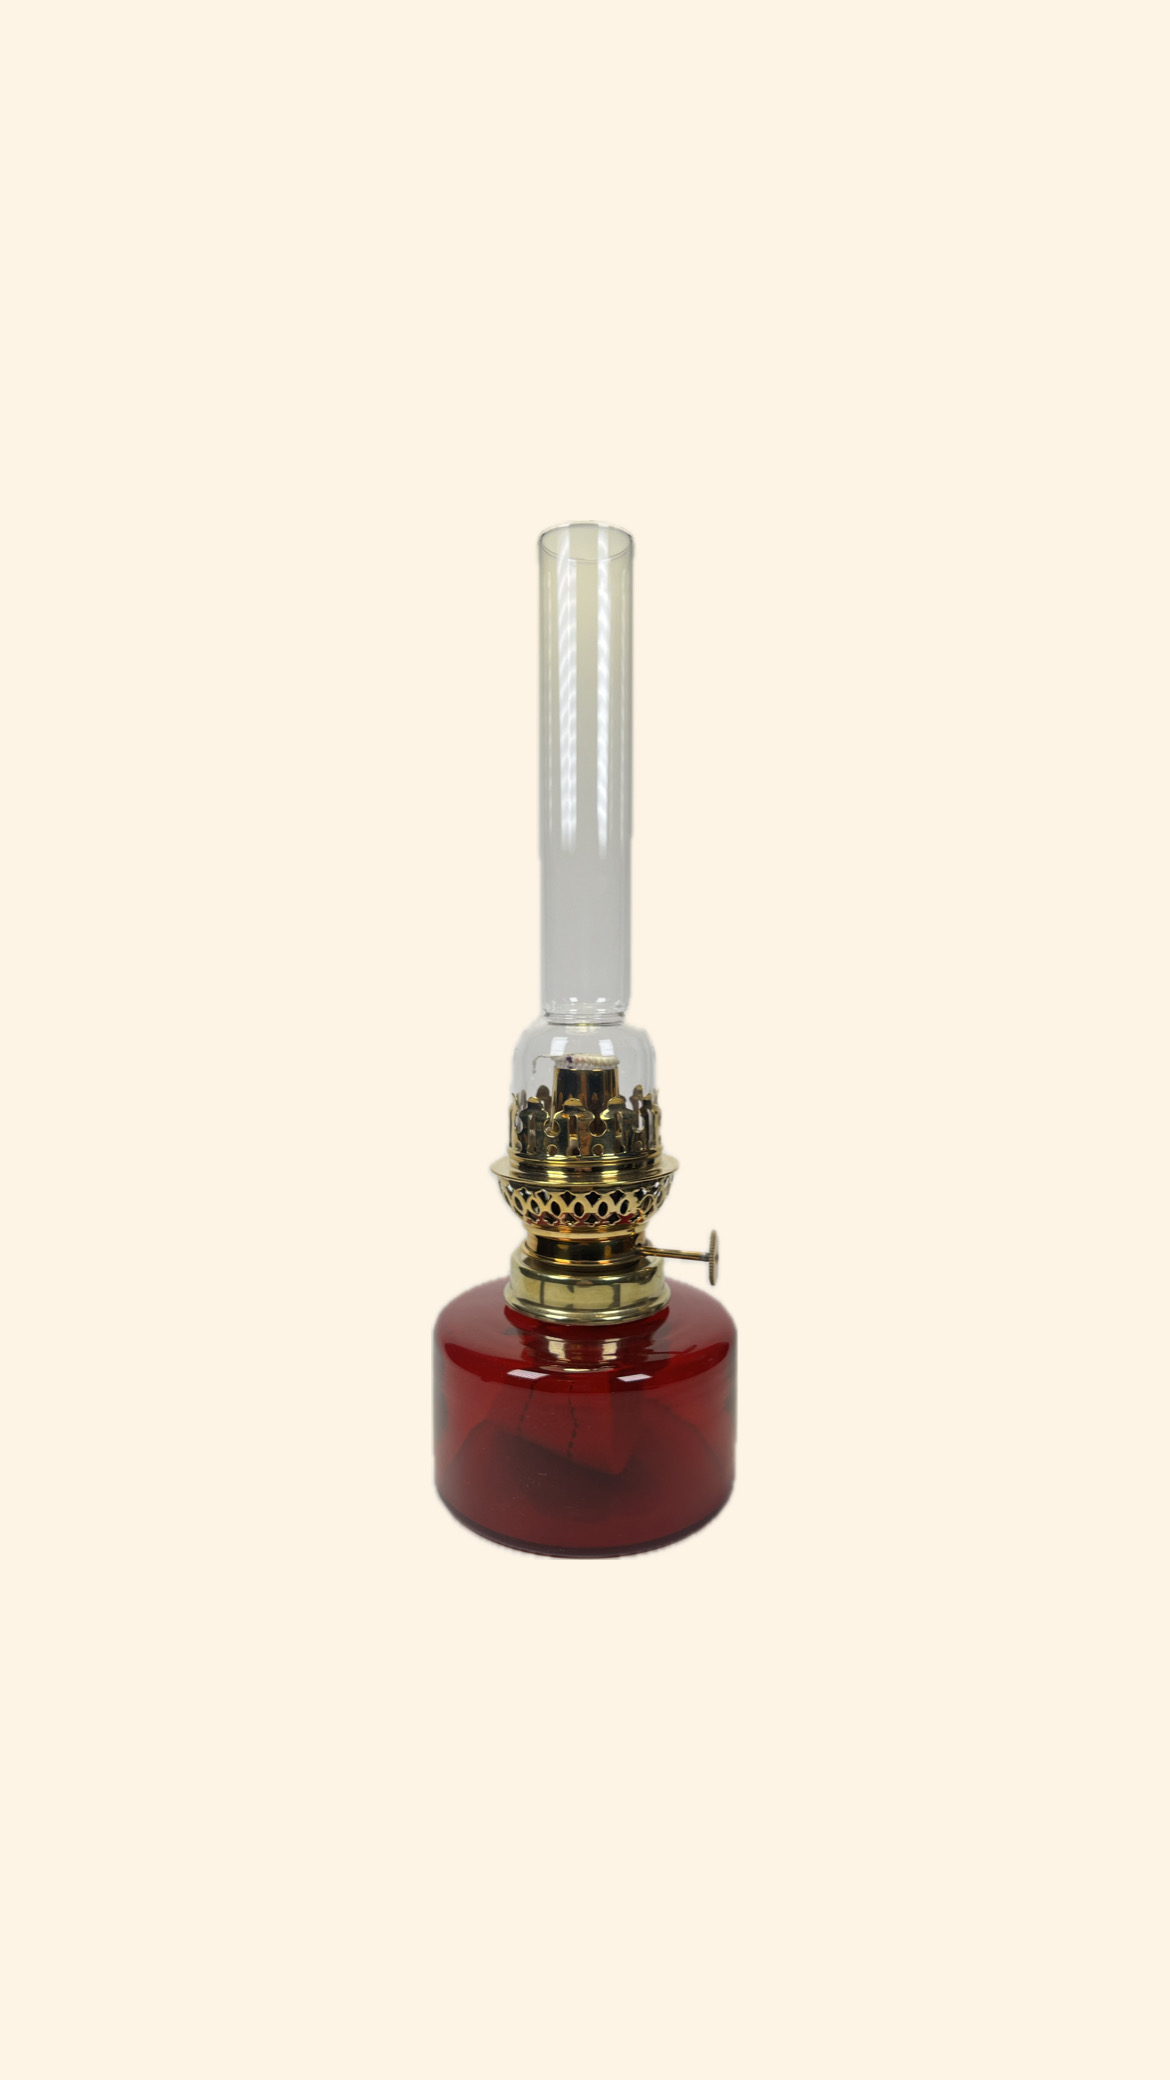 Fotogenlampa med ett oljehus i rött glas och oljehus med brännare i blank mässing. Mässing Mästers egna fotogenlampa 